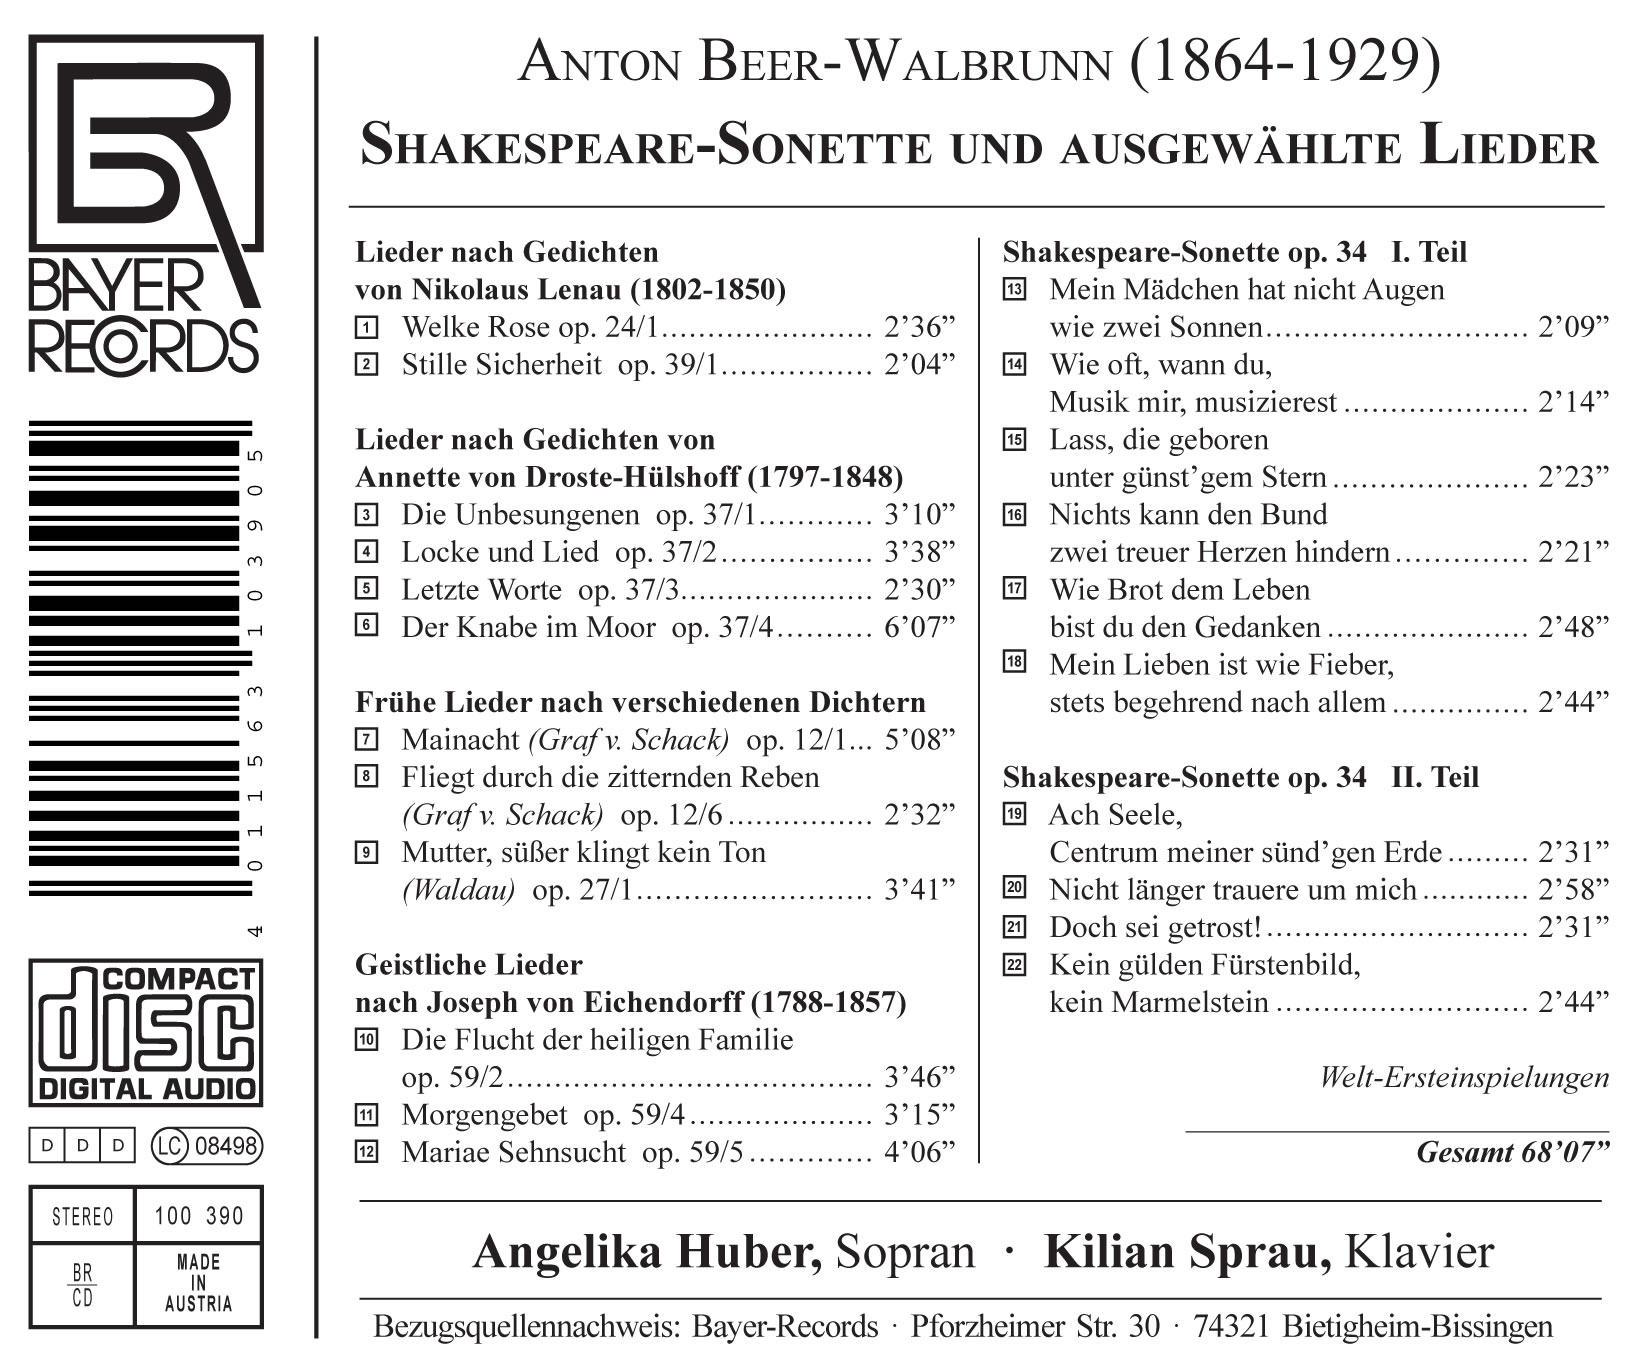 Anton Beer-Walbrunn - Shakespeare-Sonette und ausgewählte Lieder